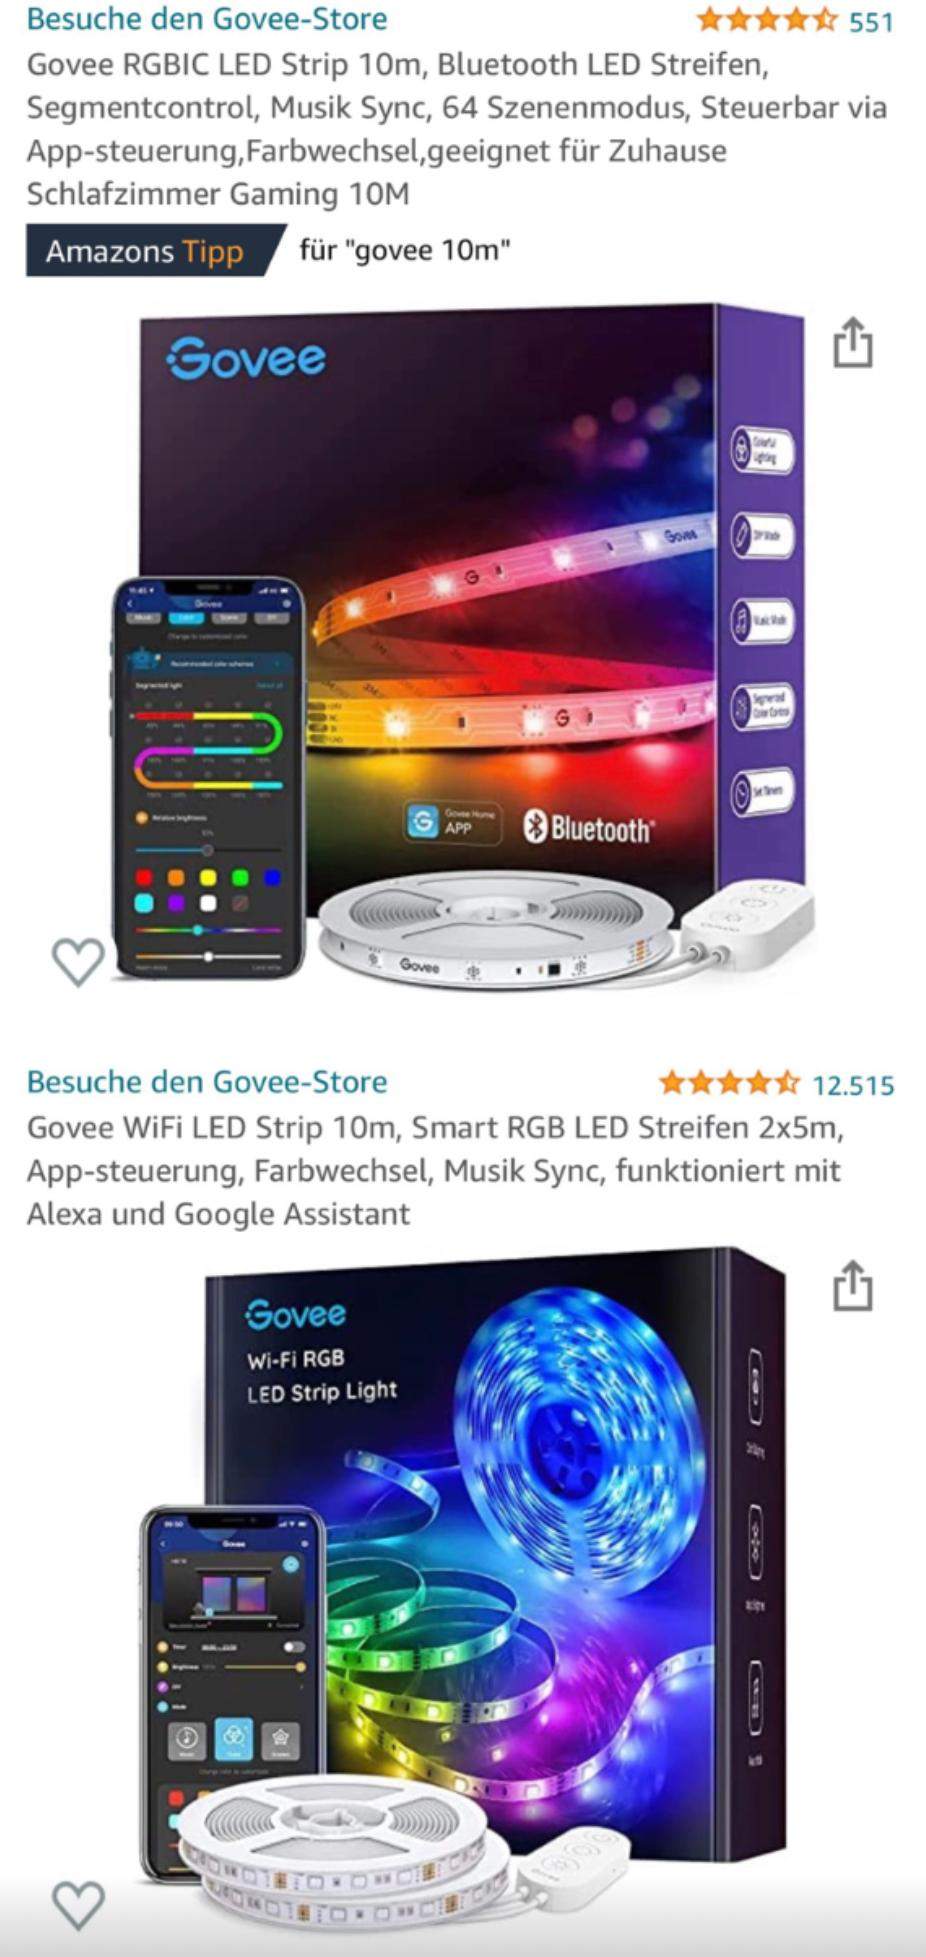 64 Szenenmodus Bluetooth LED Streifen Govee RGBIC LED Strip 5m Steuerbar via App-steuerung,Farbwechsel,geeignet für Zuhause Schlafzimmer Gaming 5M Segmentcontrol Musik Sync 